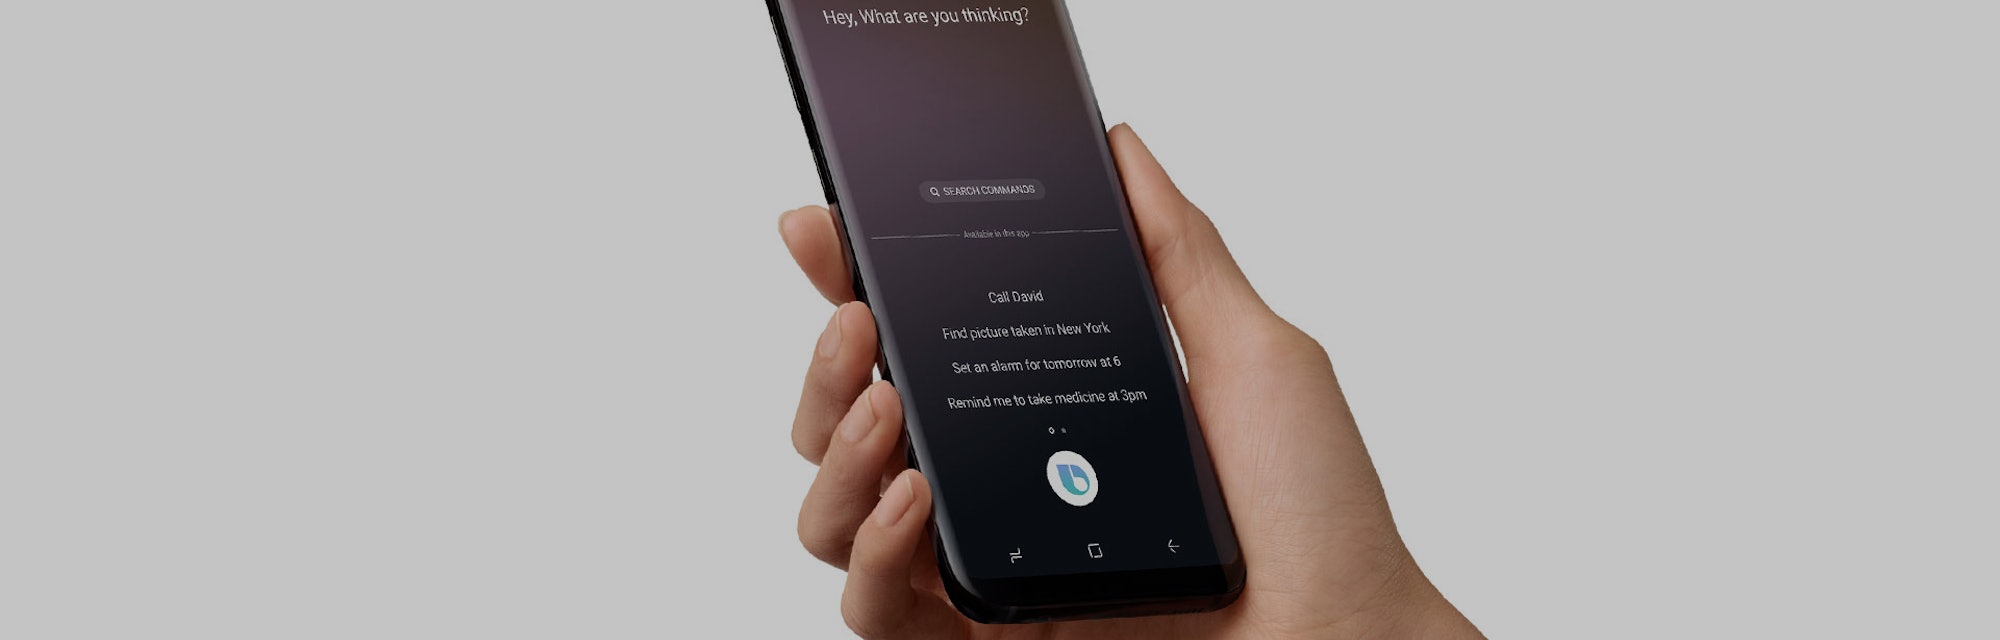 Is Bixby like Siri?